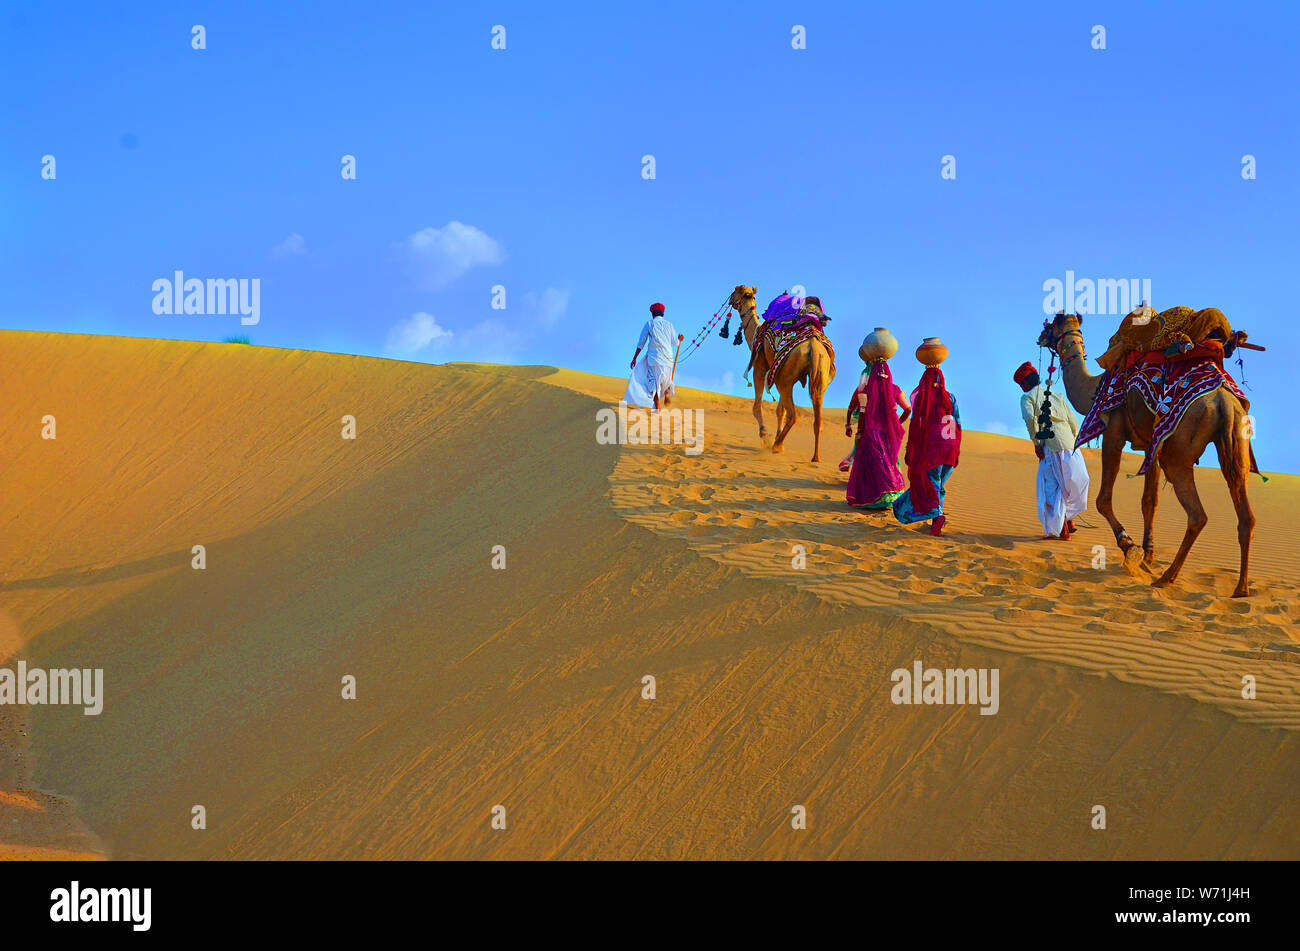 Due cameleers e le donne con i cammelli a piedi sulle dune di sabbia del deserto di Thar contro il cielo blu , Jaisalmer, Rajasthan, India Foto Stock